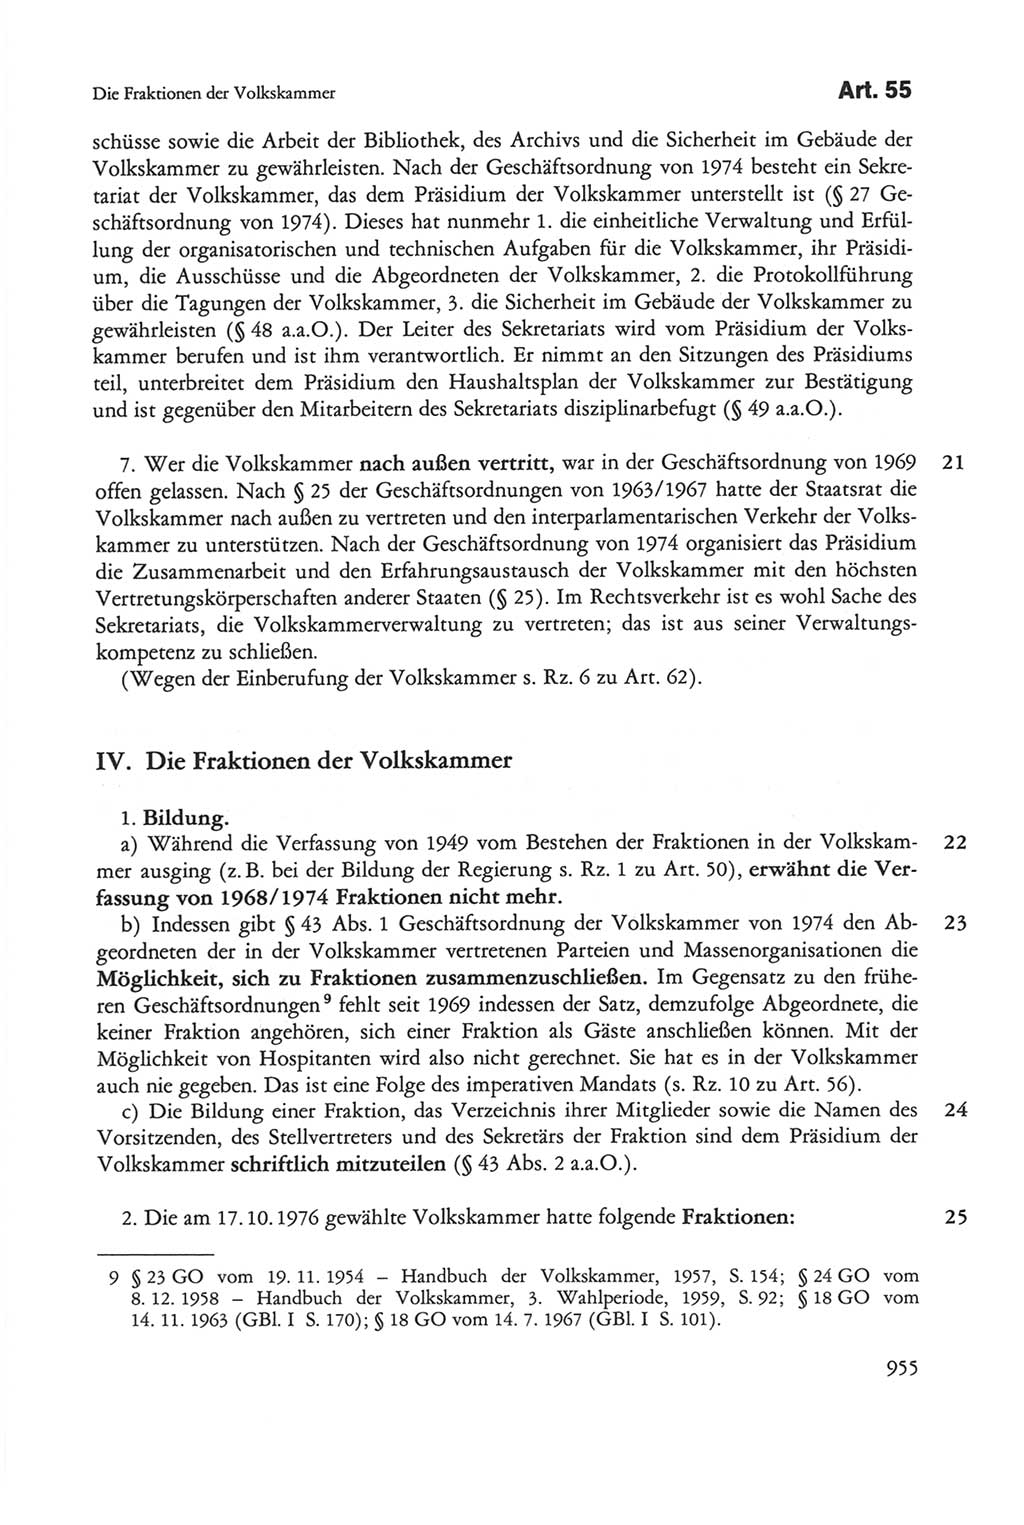 Die sozialistische Verfassung der Deutschen Demokratischen Republik (DDR), Kommentar 1982, Seite 955 (Soz. Verf. DDR Komm. 1982, S. 955)